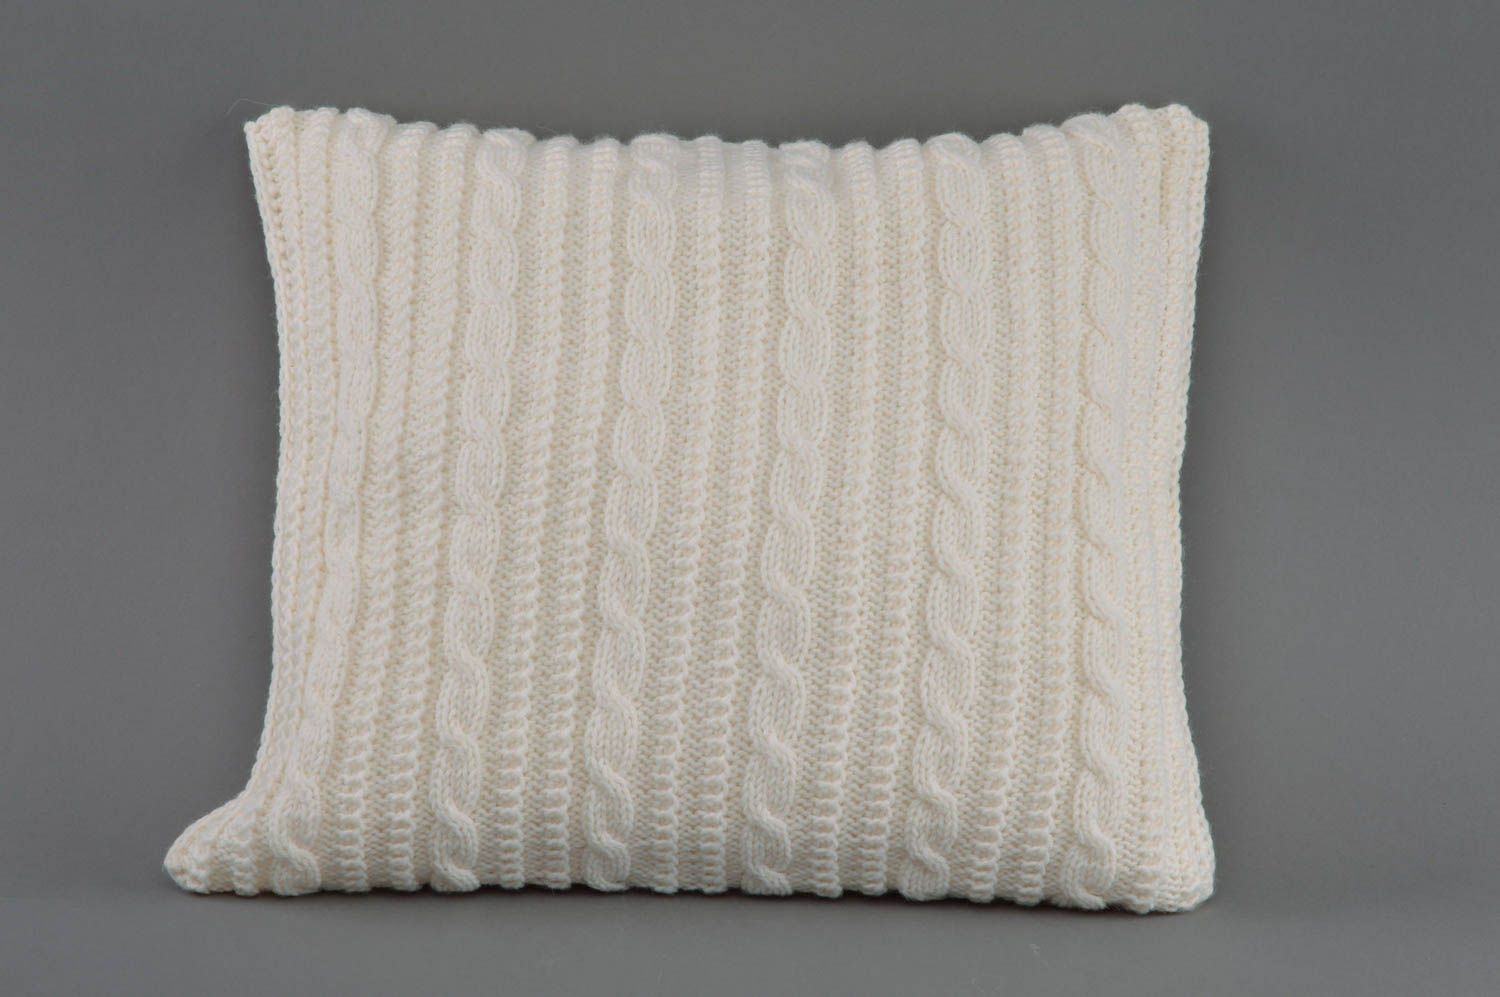 Вязаная диванная подушка белая с деревянными пуговицами квадратная ручной работы фото 2